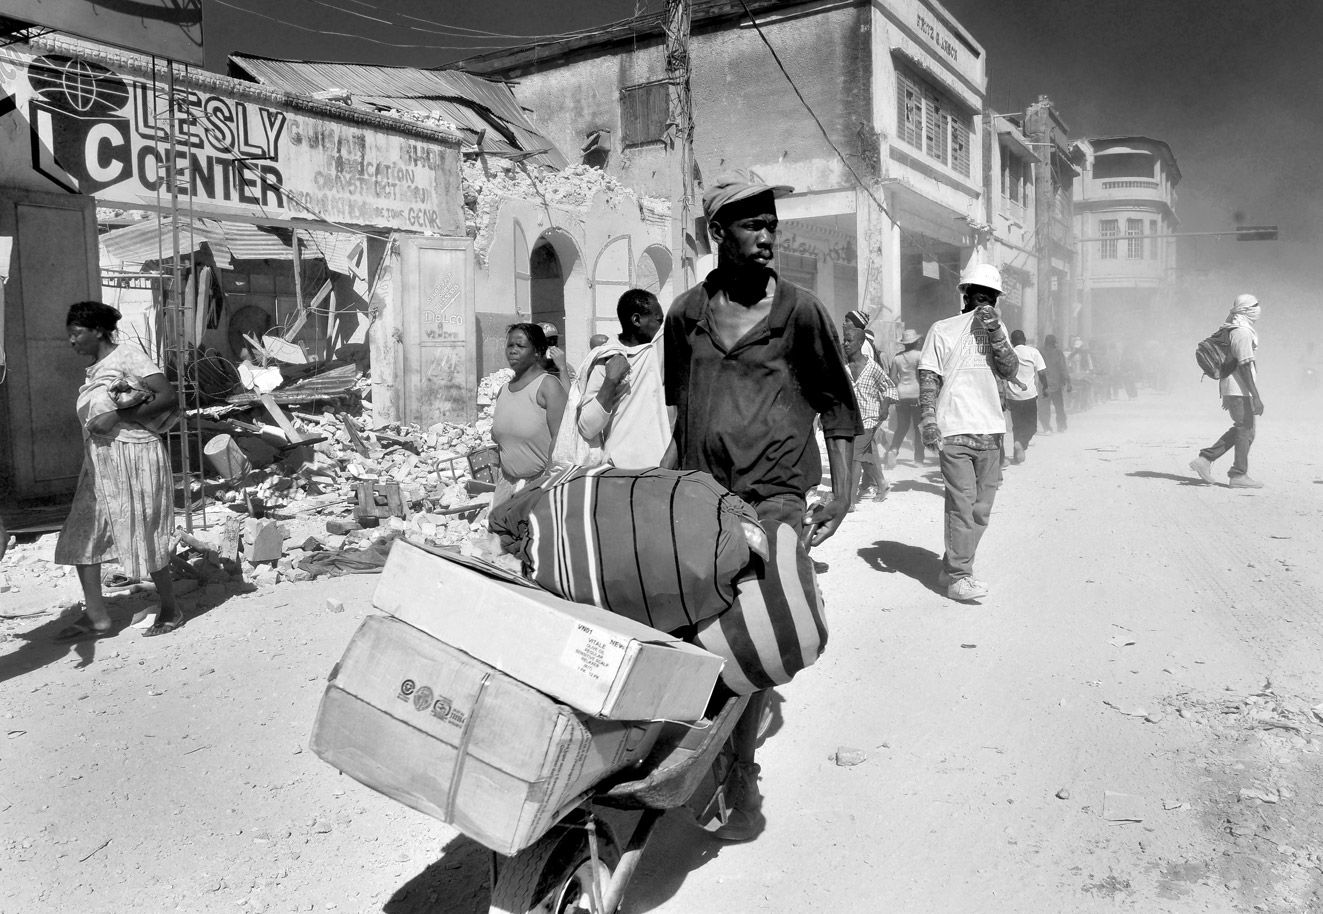 Proyecto14 by Jorge Núñez-Fotografía  - haiti-terremoto-catastrofes-sucesos-03022011-3.jpg